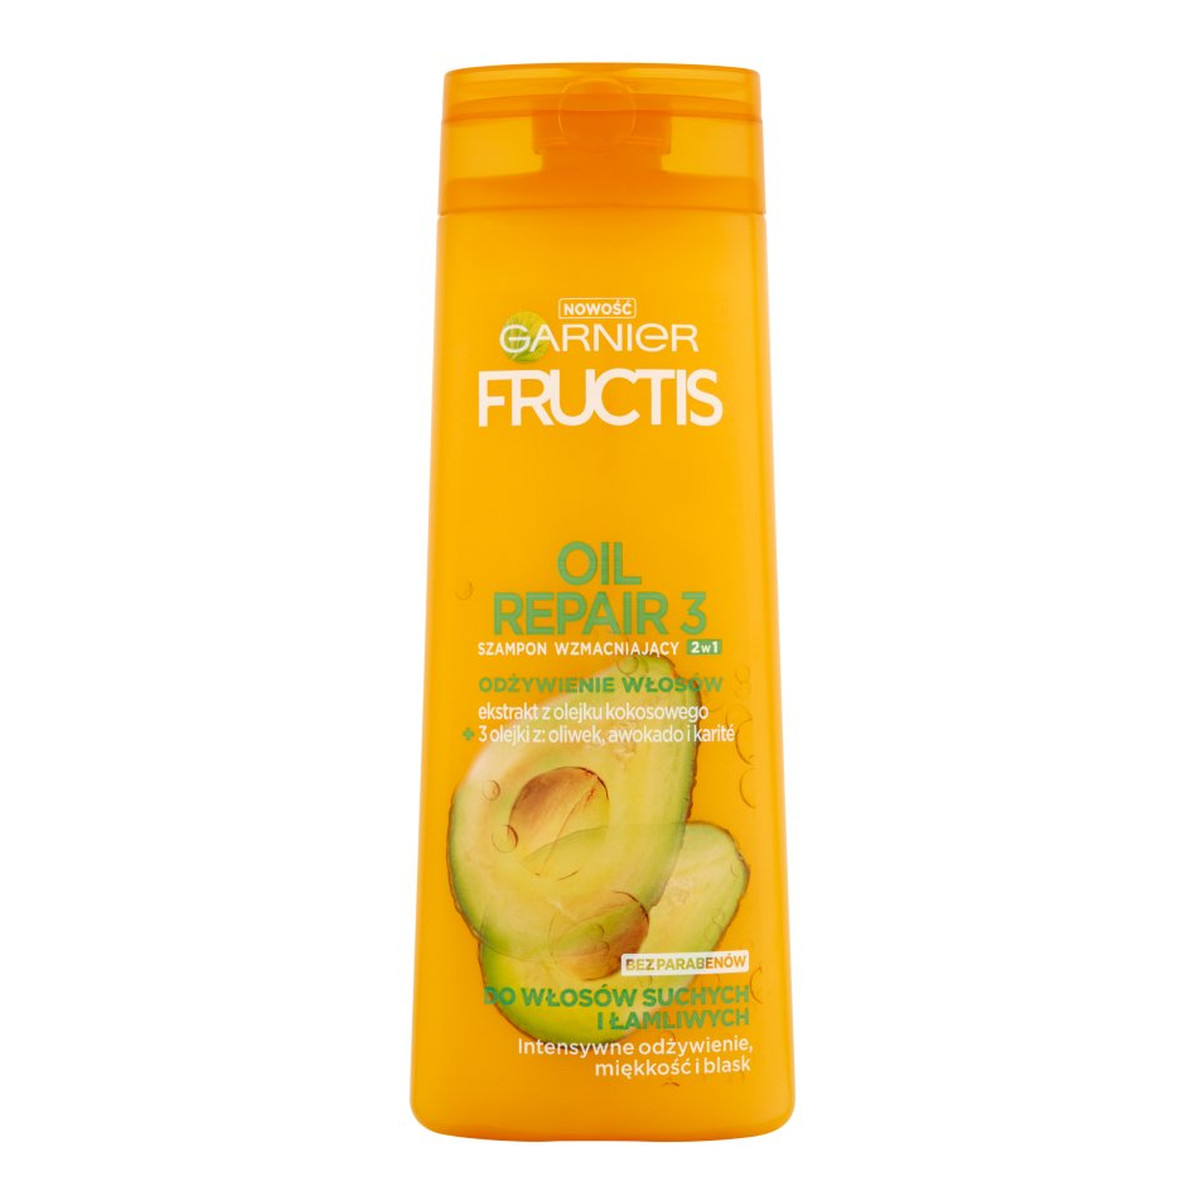 Garnier Fructis Oil Repair 3 szampon do włosów suchych i łamliwych 400ml